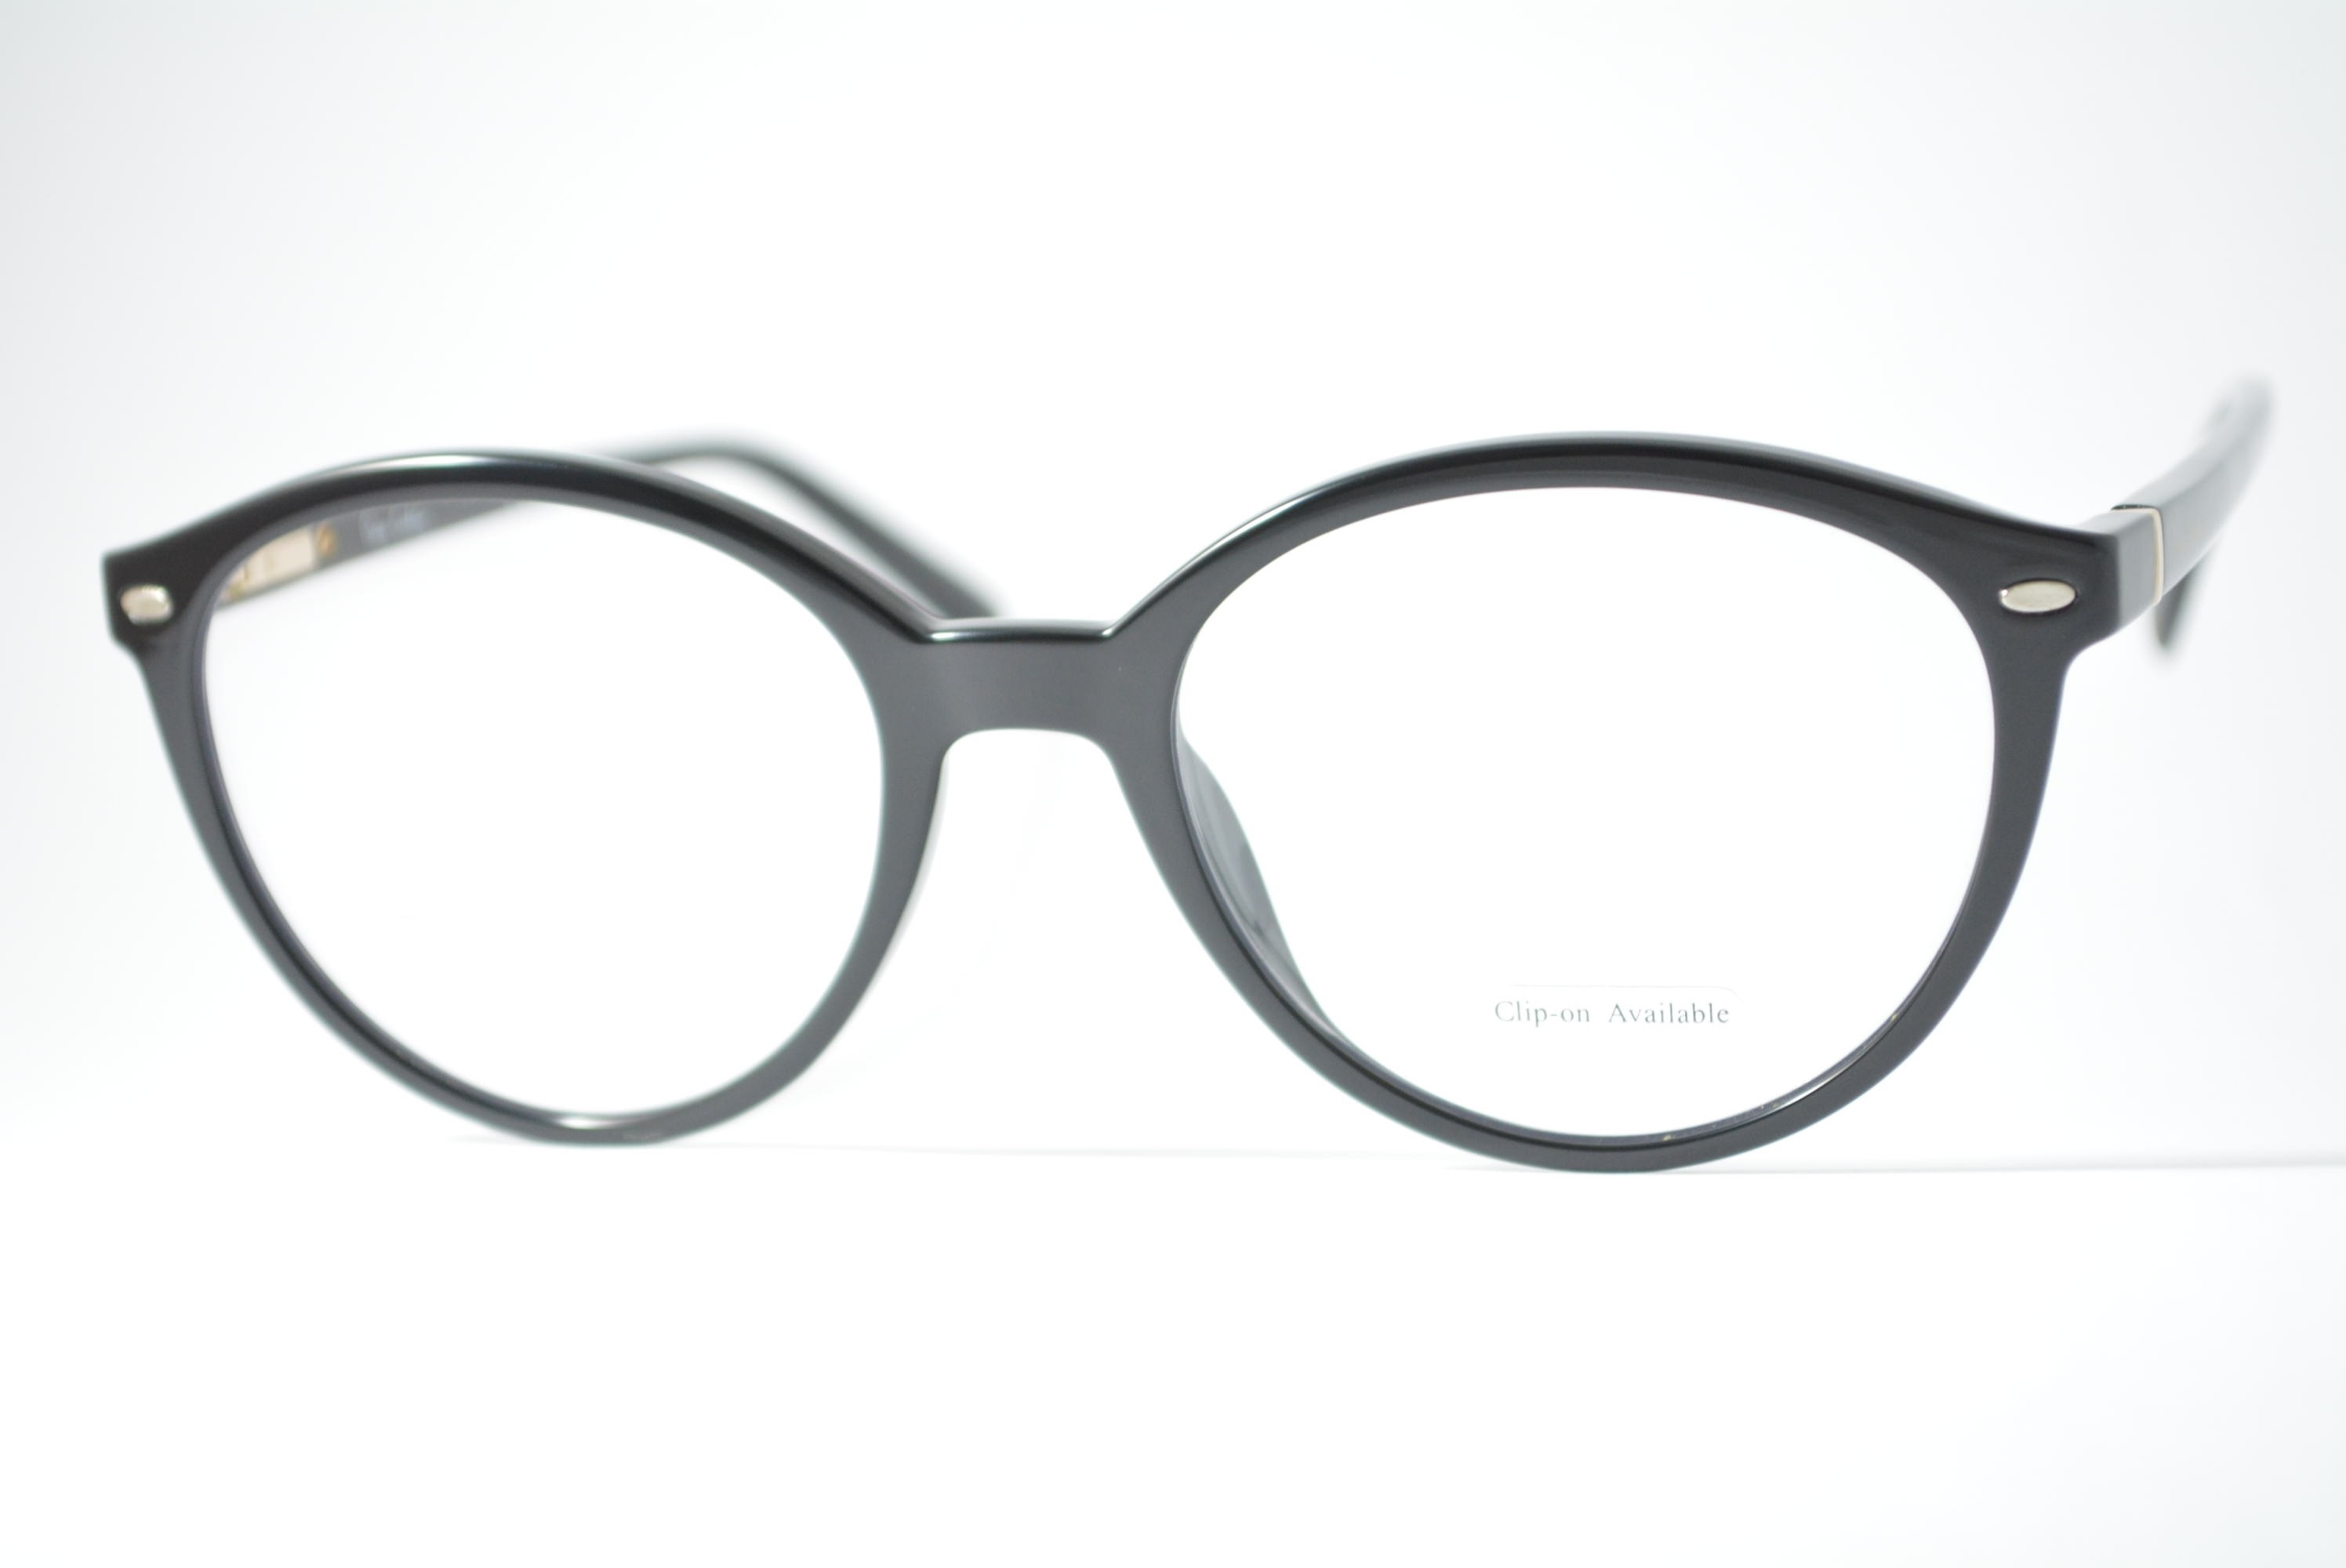 armação de óculos Pierre Cardin mod pc8494/cs 80799 clip on